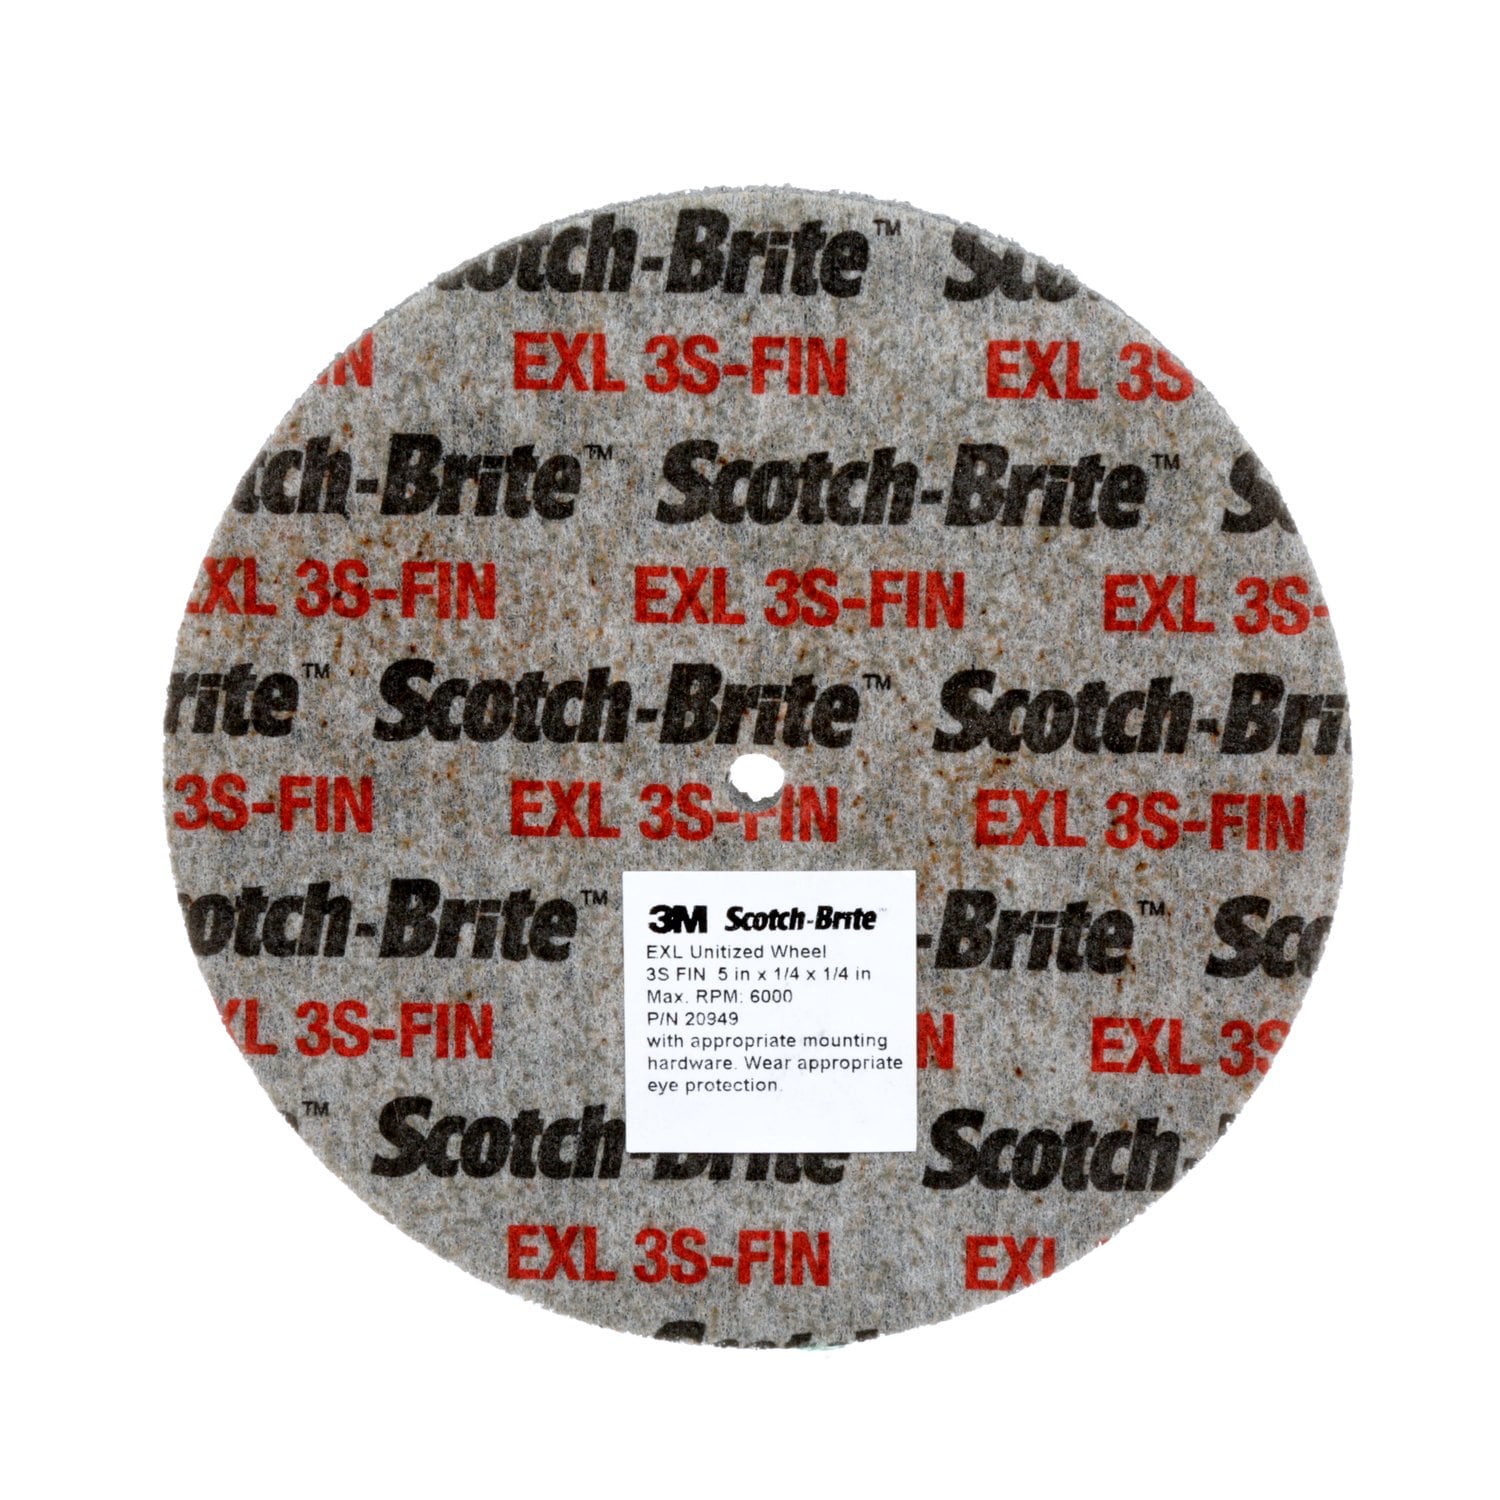 7100051601 - Scotch-Brite EXL Unitized Wheel, XL-UW, 3S Fine, MISC x 5/8 in x MISC,
Config